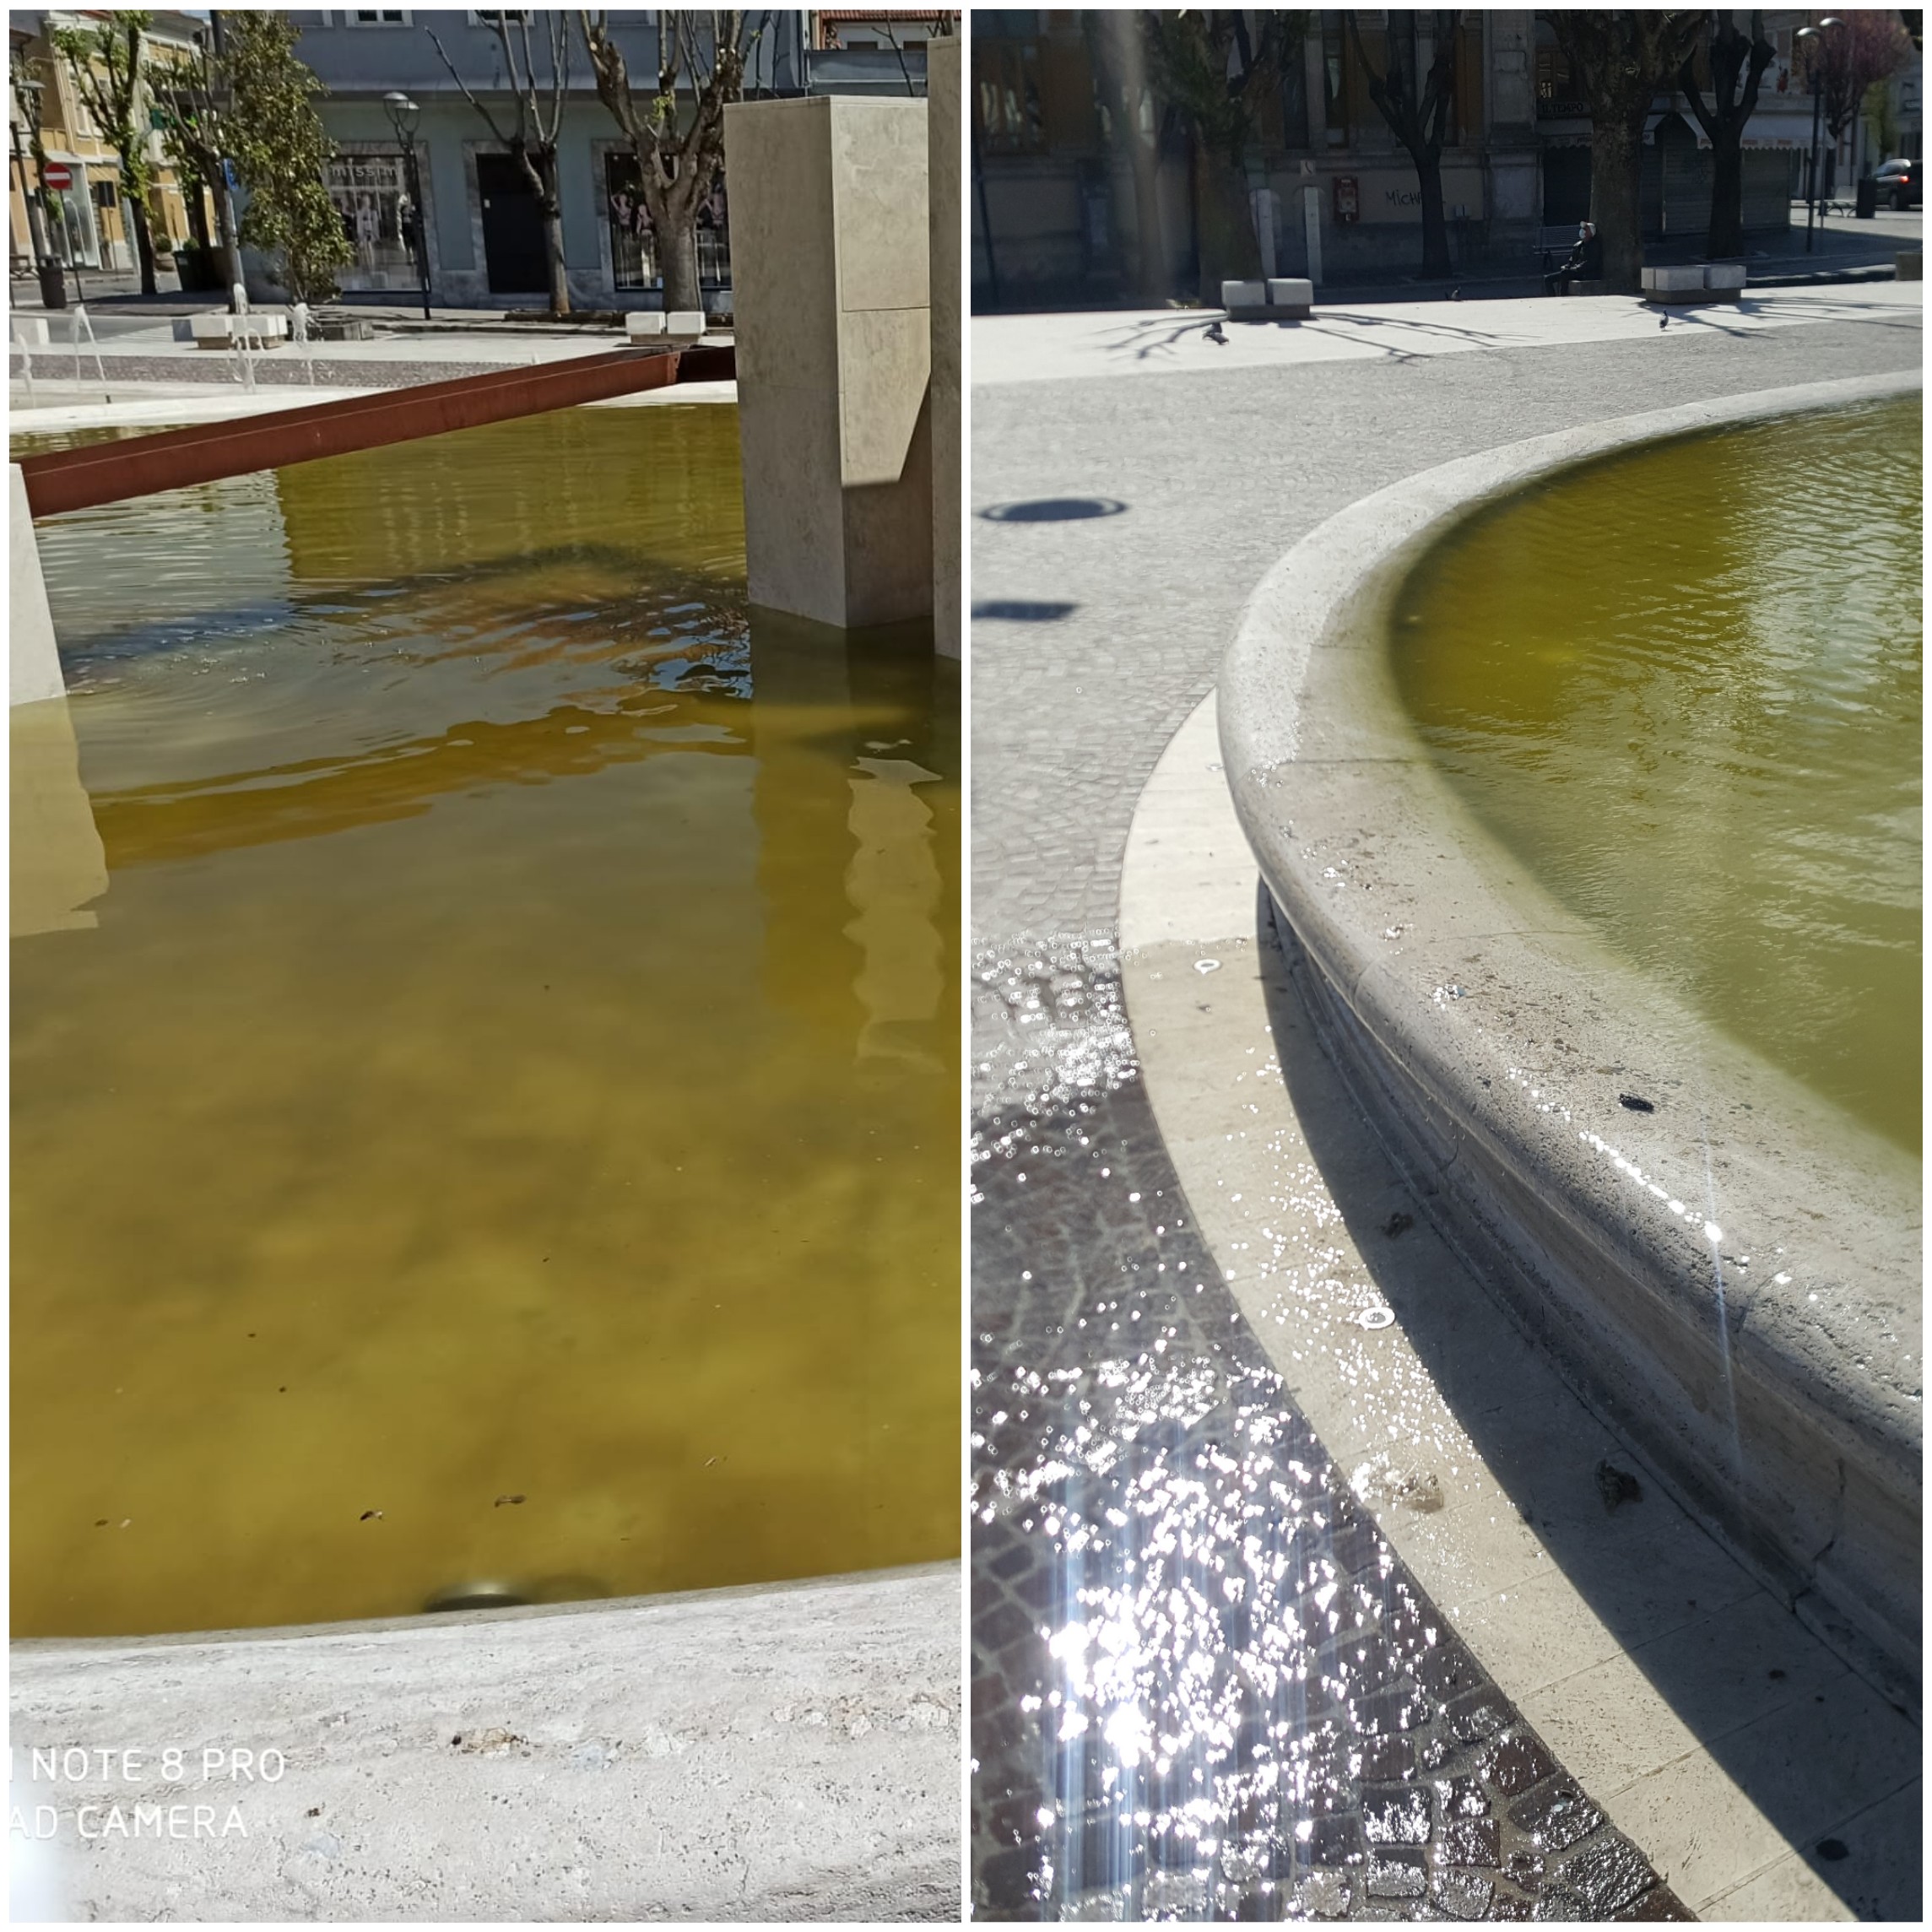 Acqua "sporca" e maleodorante nella fontana di Piazza Risorgimento, residenti indignati